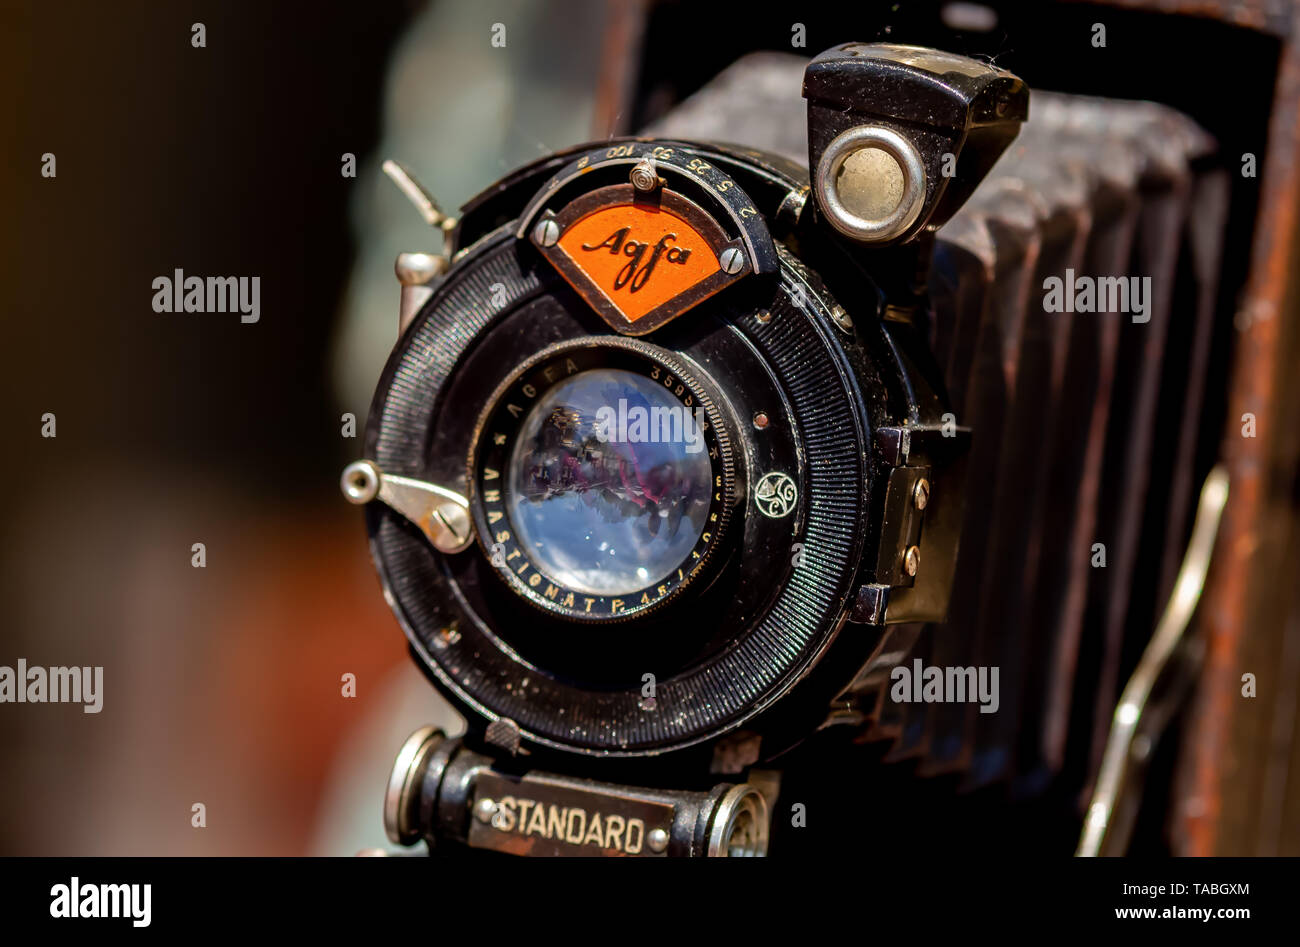 Bucarest, Rumania - Mayo 12, 2019: Un antiguo formato estándar mediano Agfa cámara fotográfica plegable es visto en una feria de antigüedades en Bucarest. Foto de stock